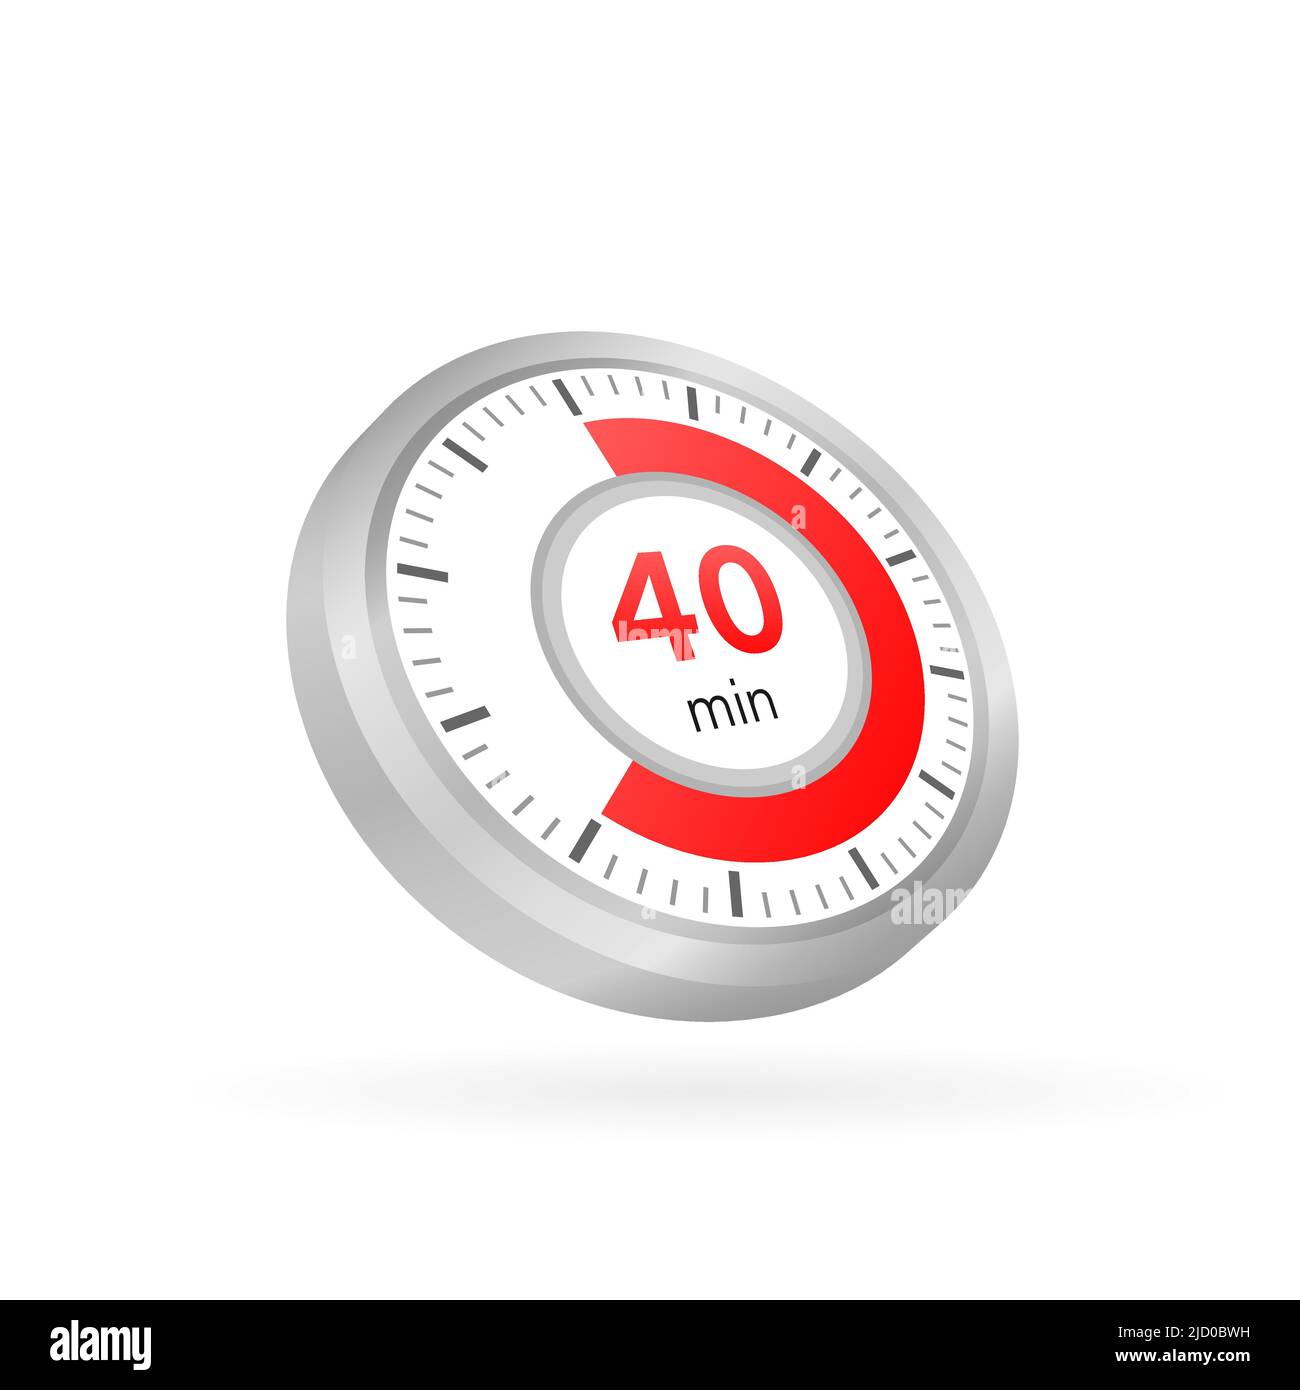 Das Vektorsymbol für die Stoppuhr für 40 Minuten. Stoppuhrsymbol in flacher Ausführung auf weißem Hintergrund. Vektorgrafik. Stock Vektor